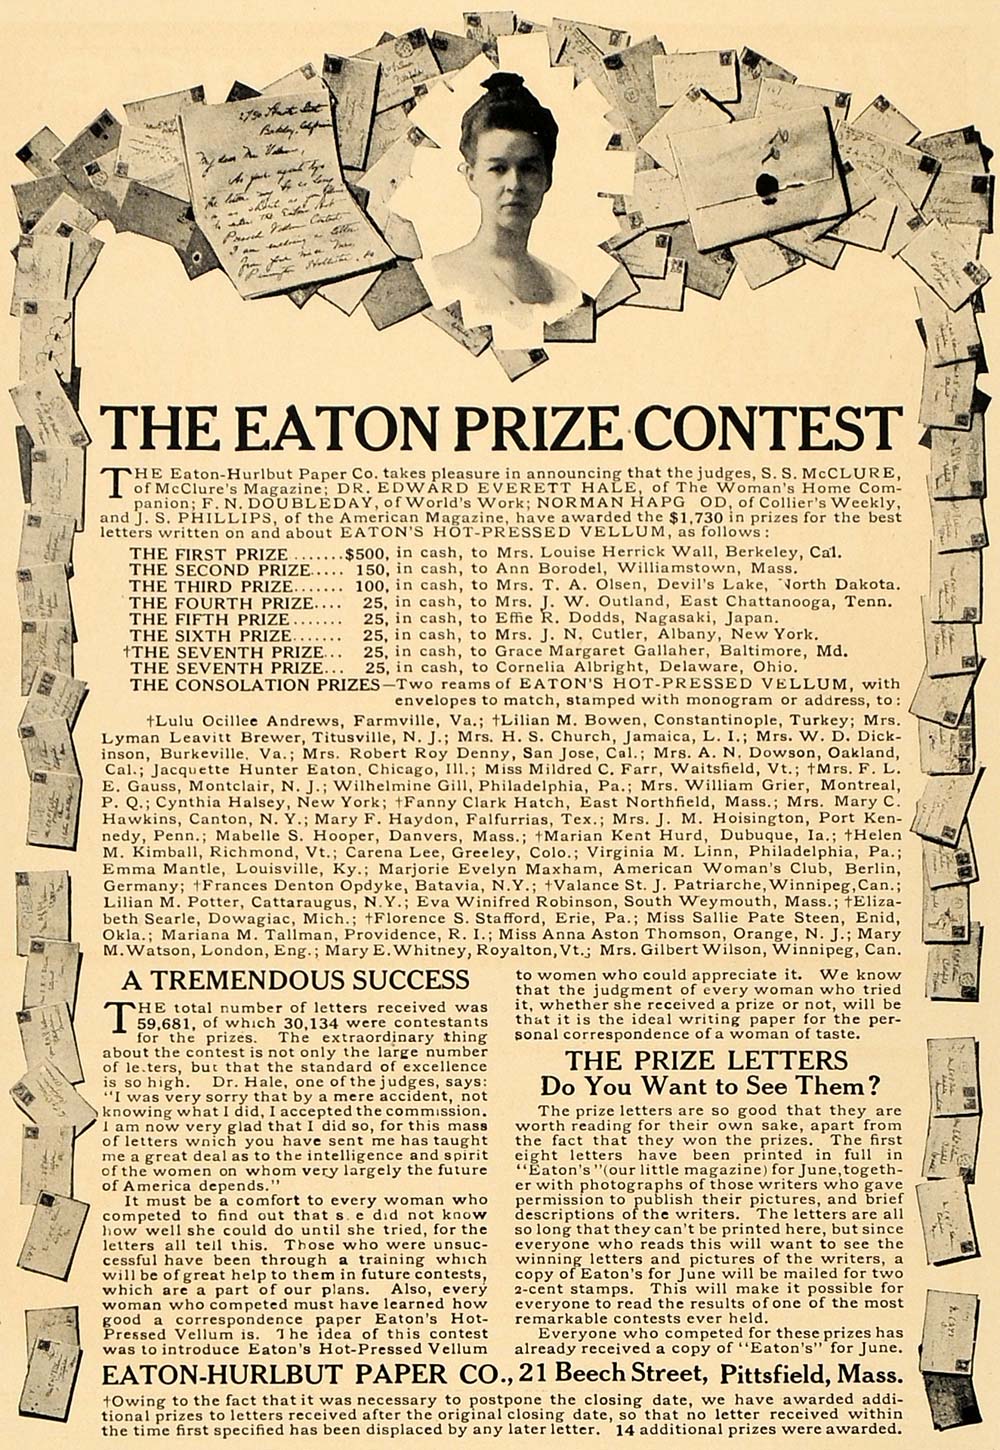 1907 Print Eaton-Hurlbut Paper Prize Contest Letters - ORIGINAL HISTORIC CL4